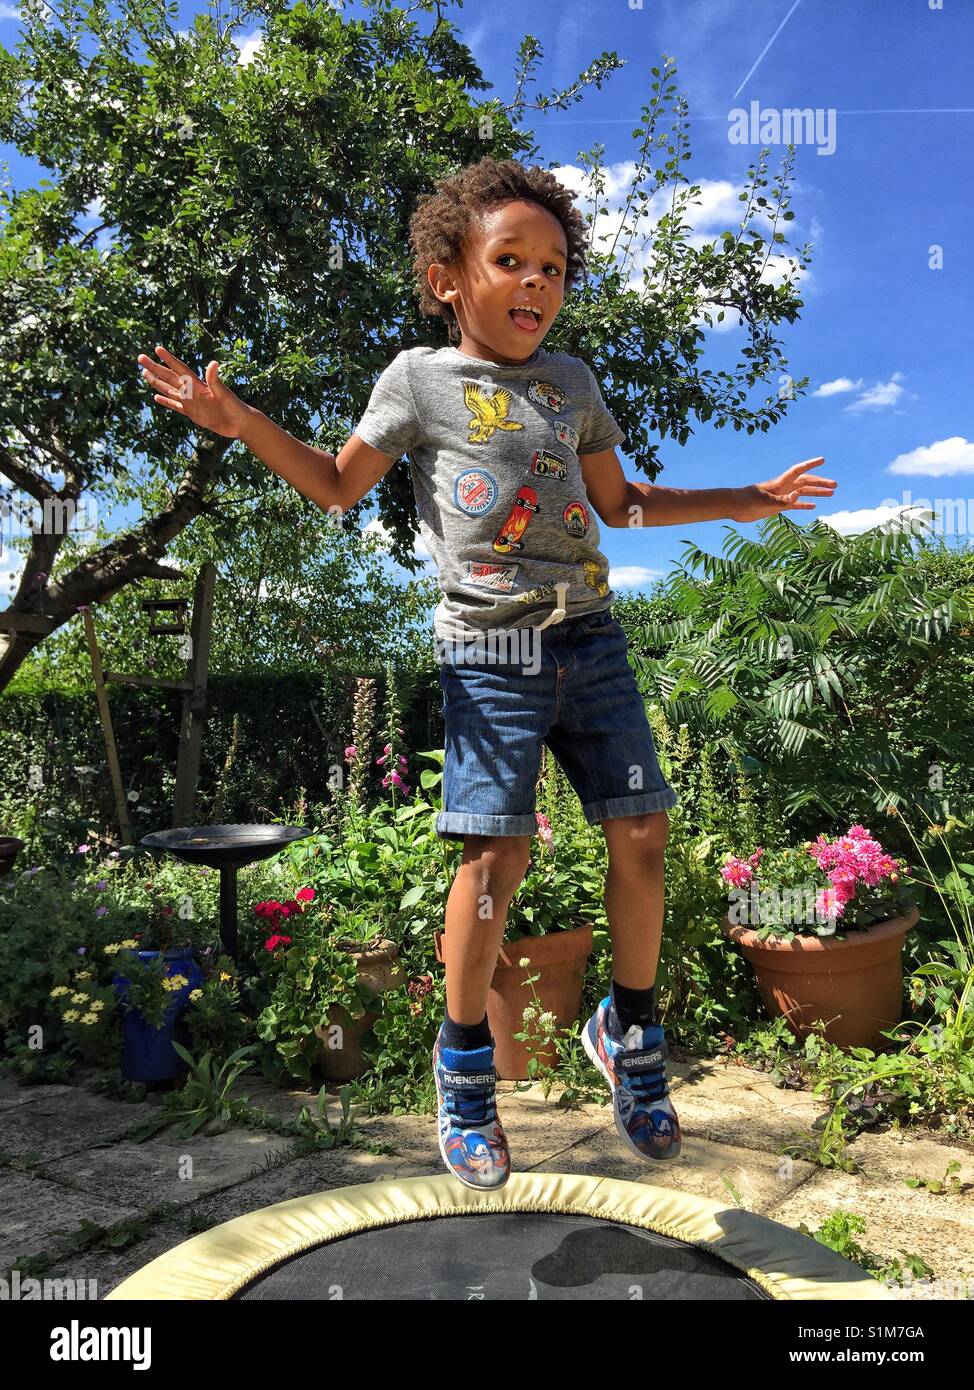 A little boy jumping on a garden trampoline Stock Photo